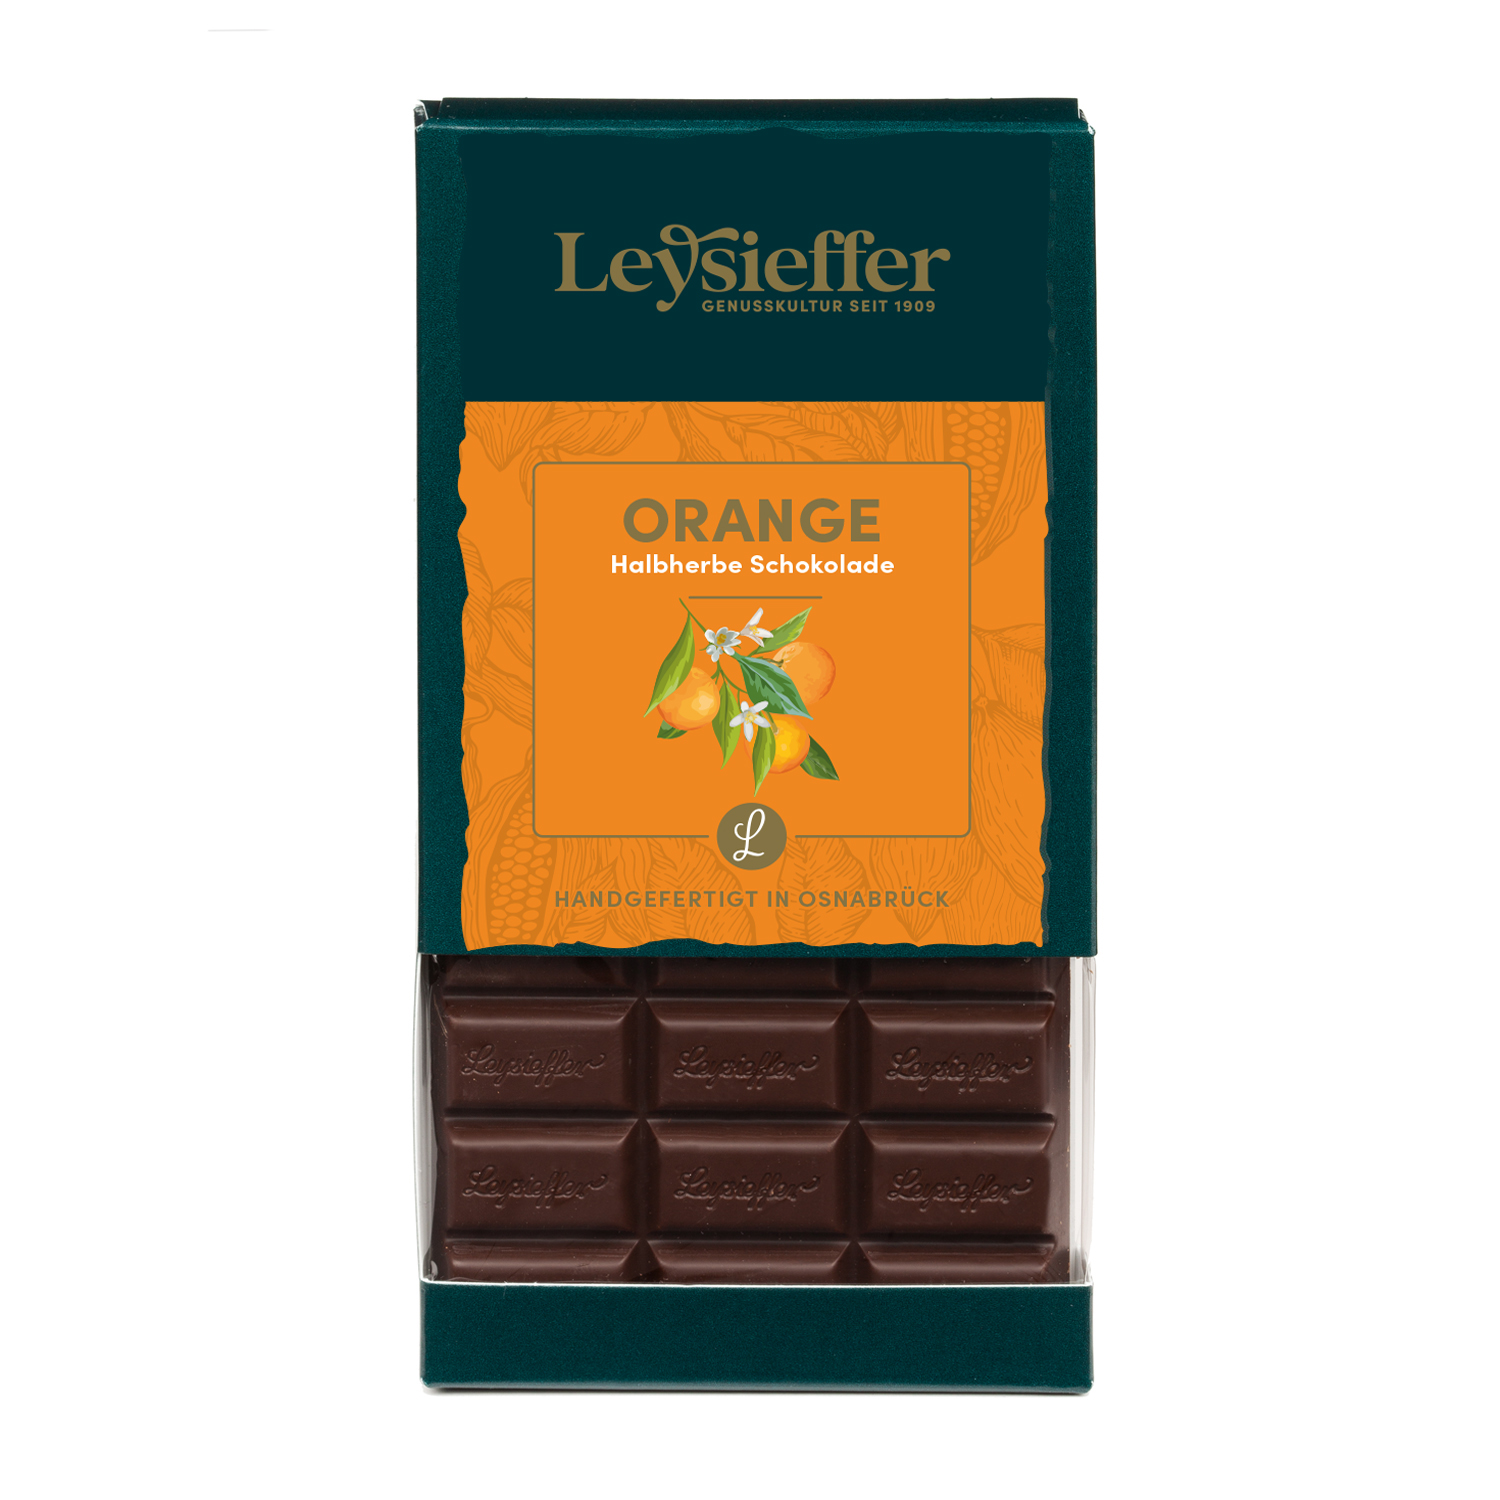 Halbherbe Schokolade mit Orange